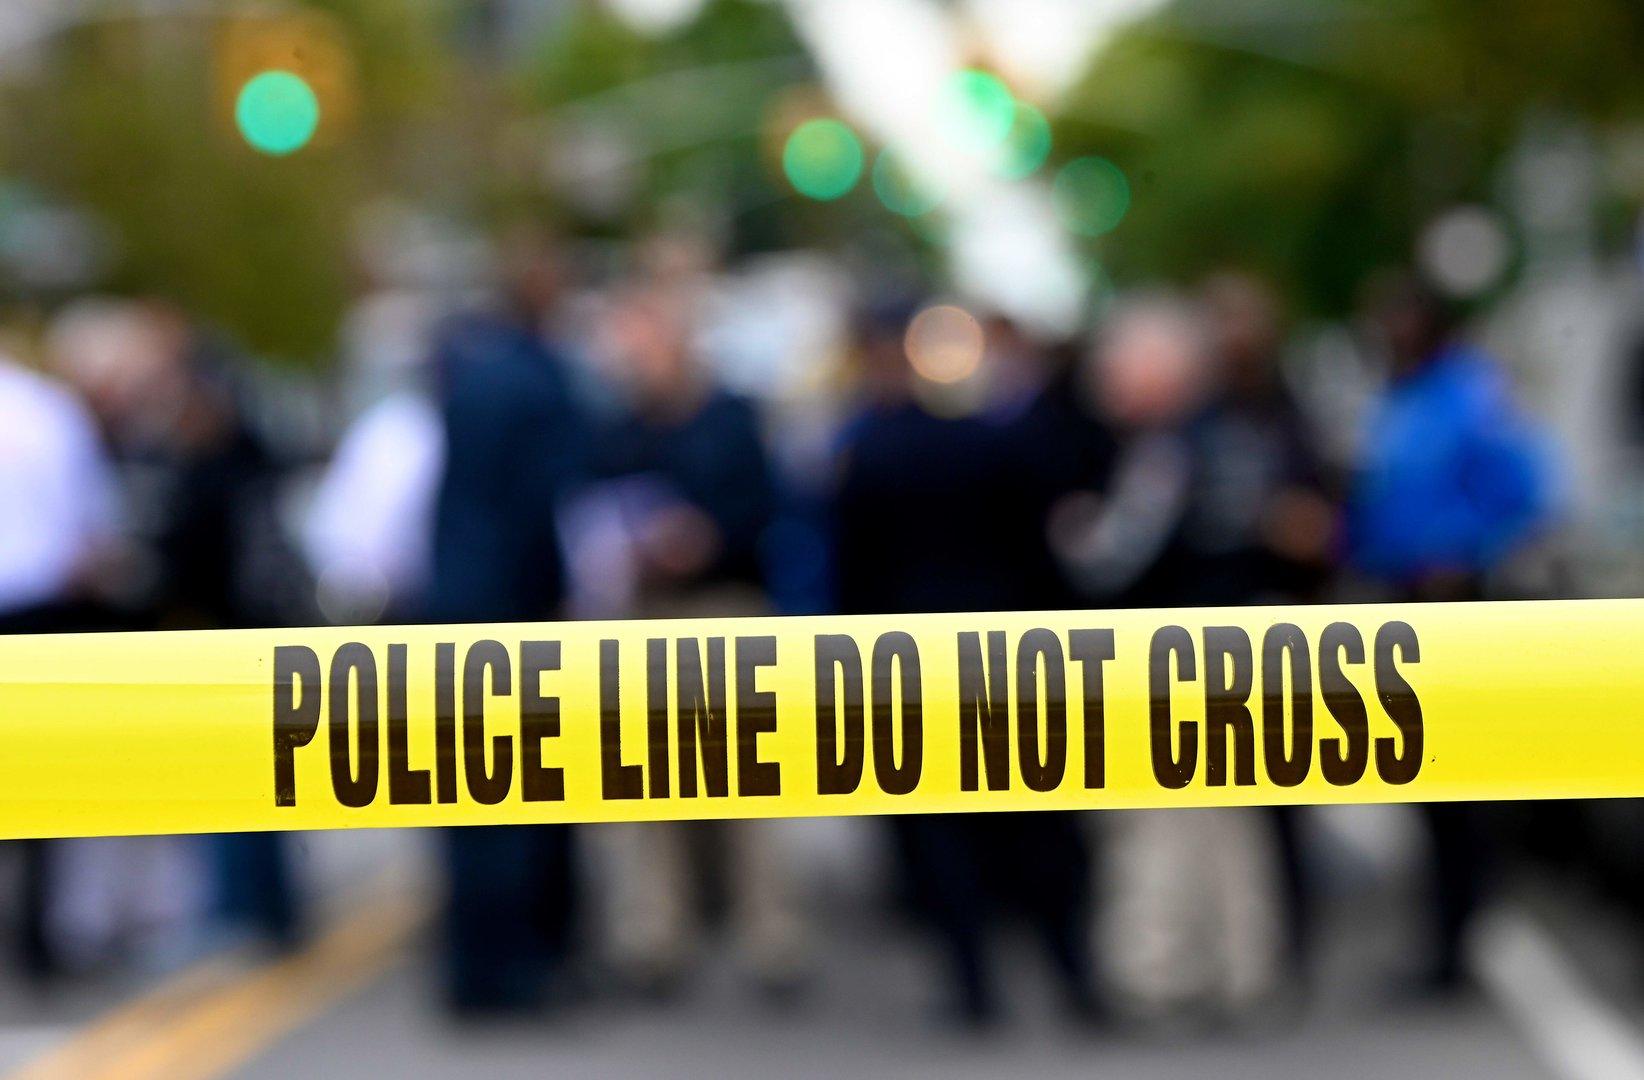 Erschossene Kinder, zerstückelte Leichen: Morde in New York steigen